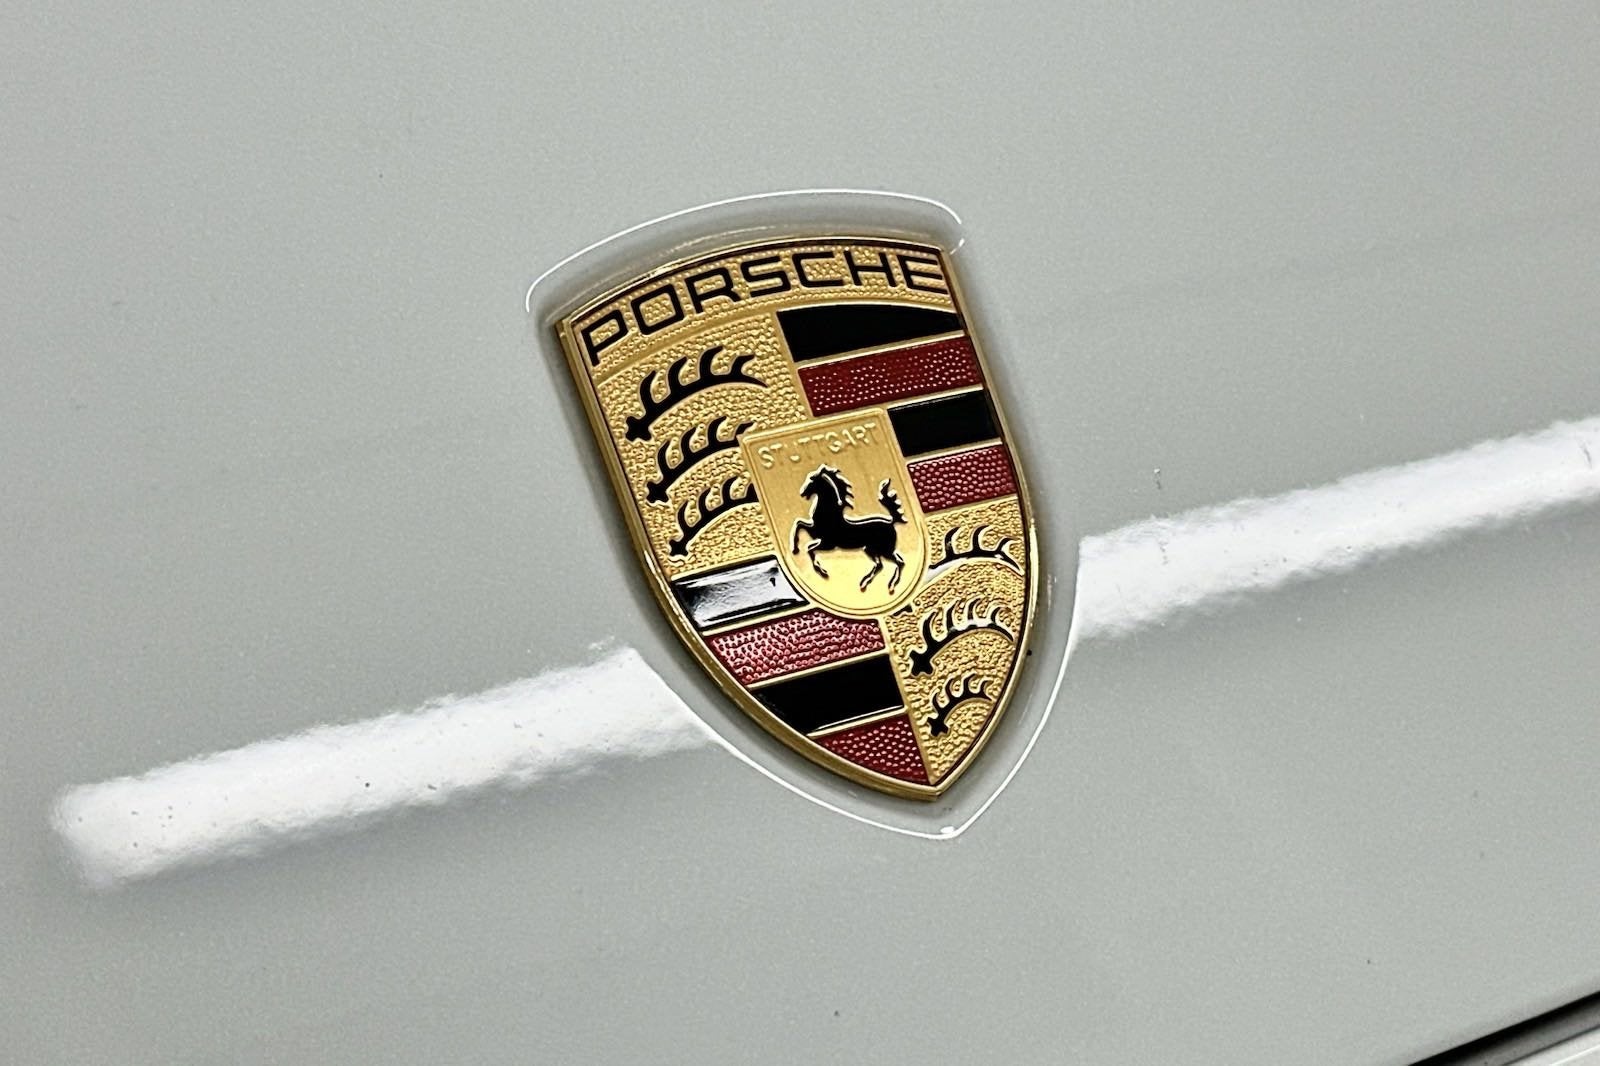 2022 Porsche Panamera Turbo S E-Hybrid